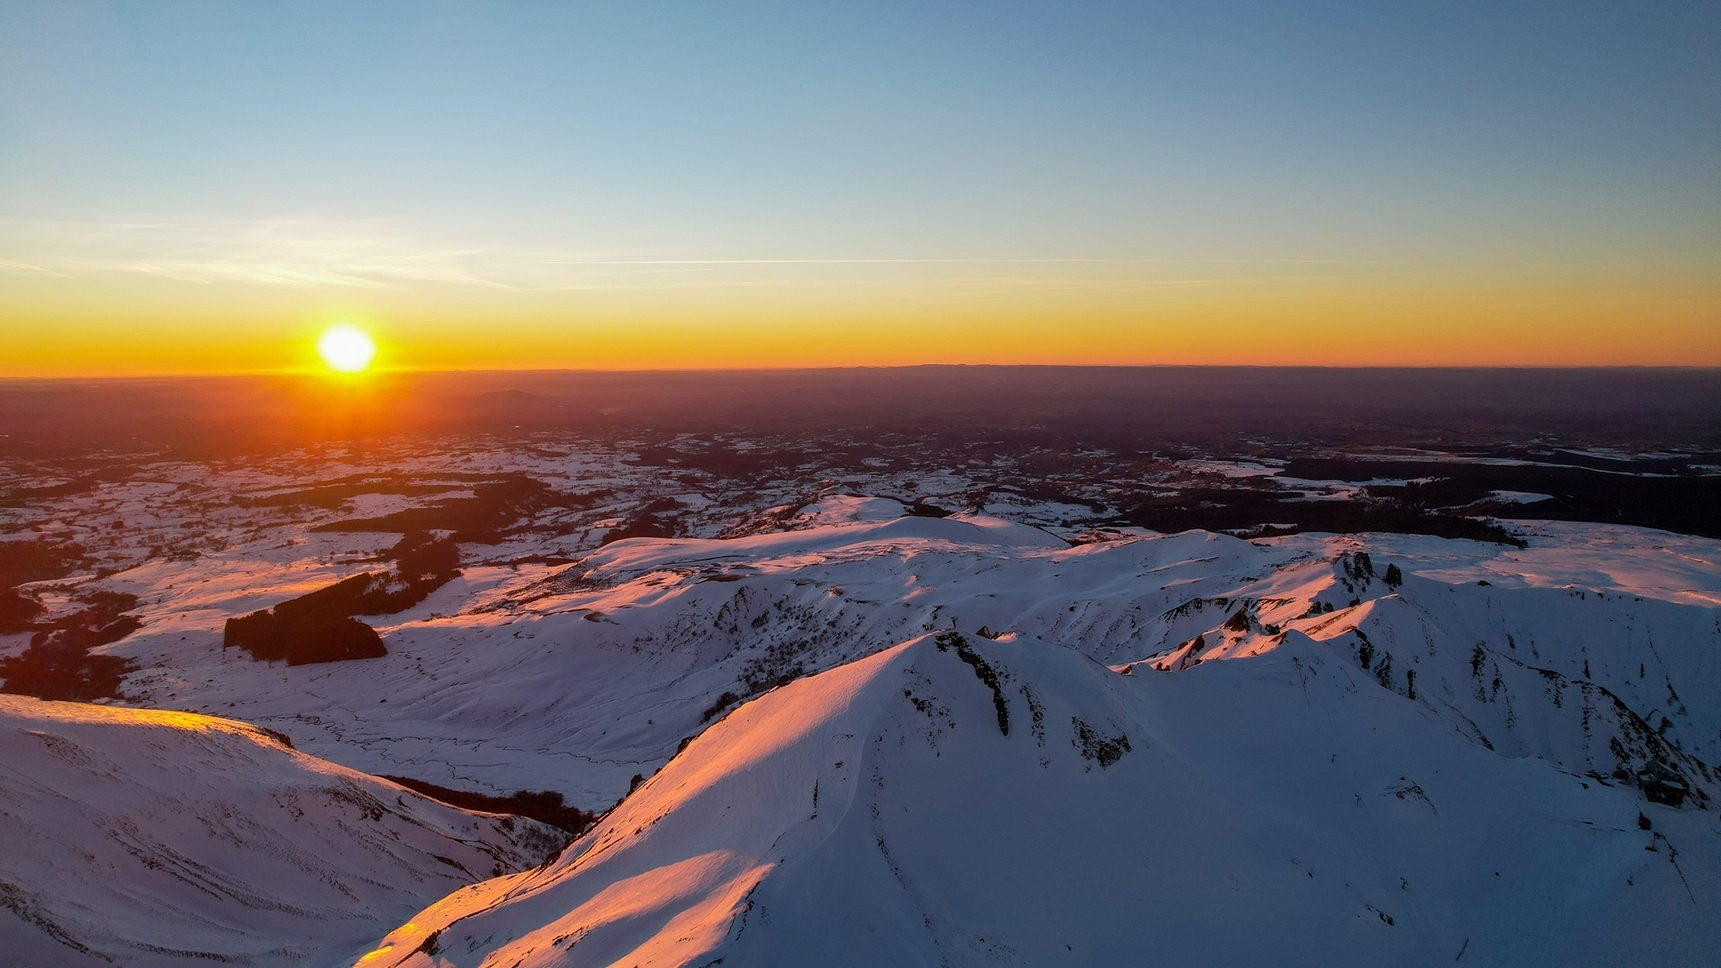 Le Puy de sancy sous la neige - magnifique coucher de soleil